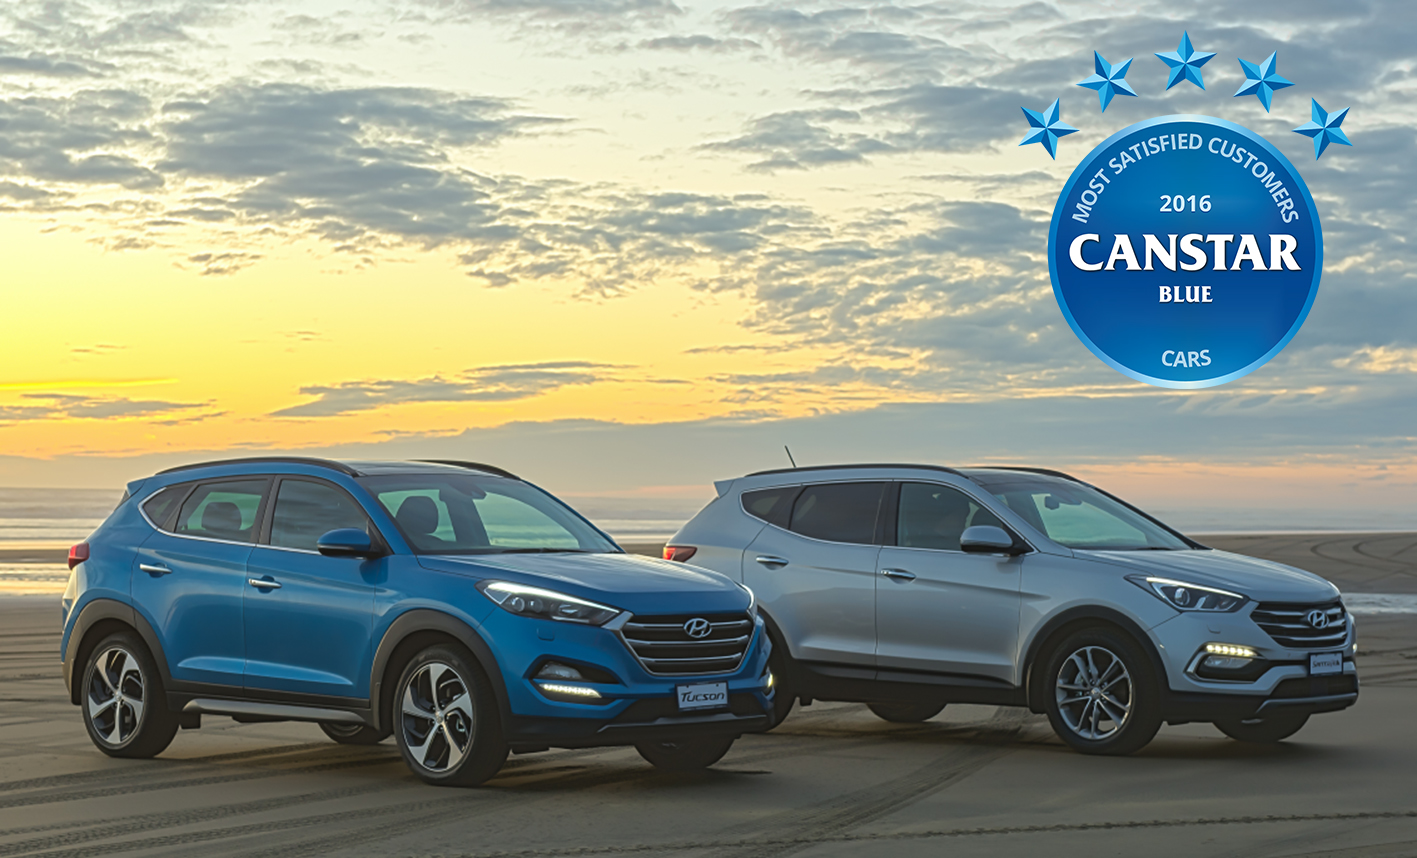 Hyundai 2016 Winner of Canstar Blue Survey Awards